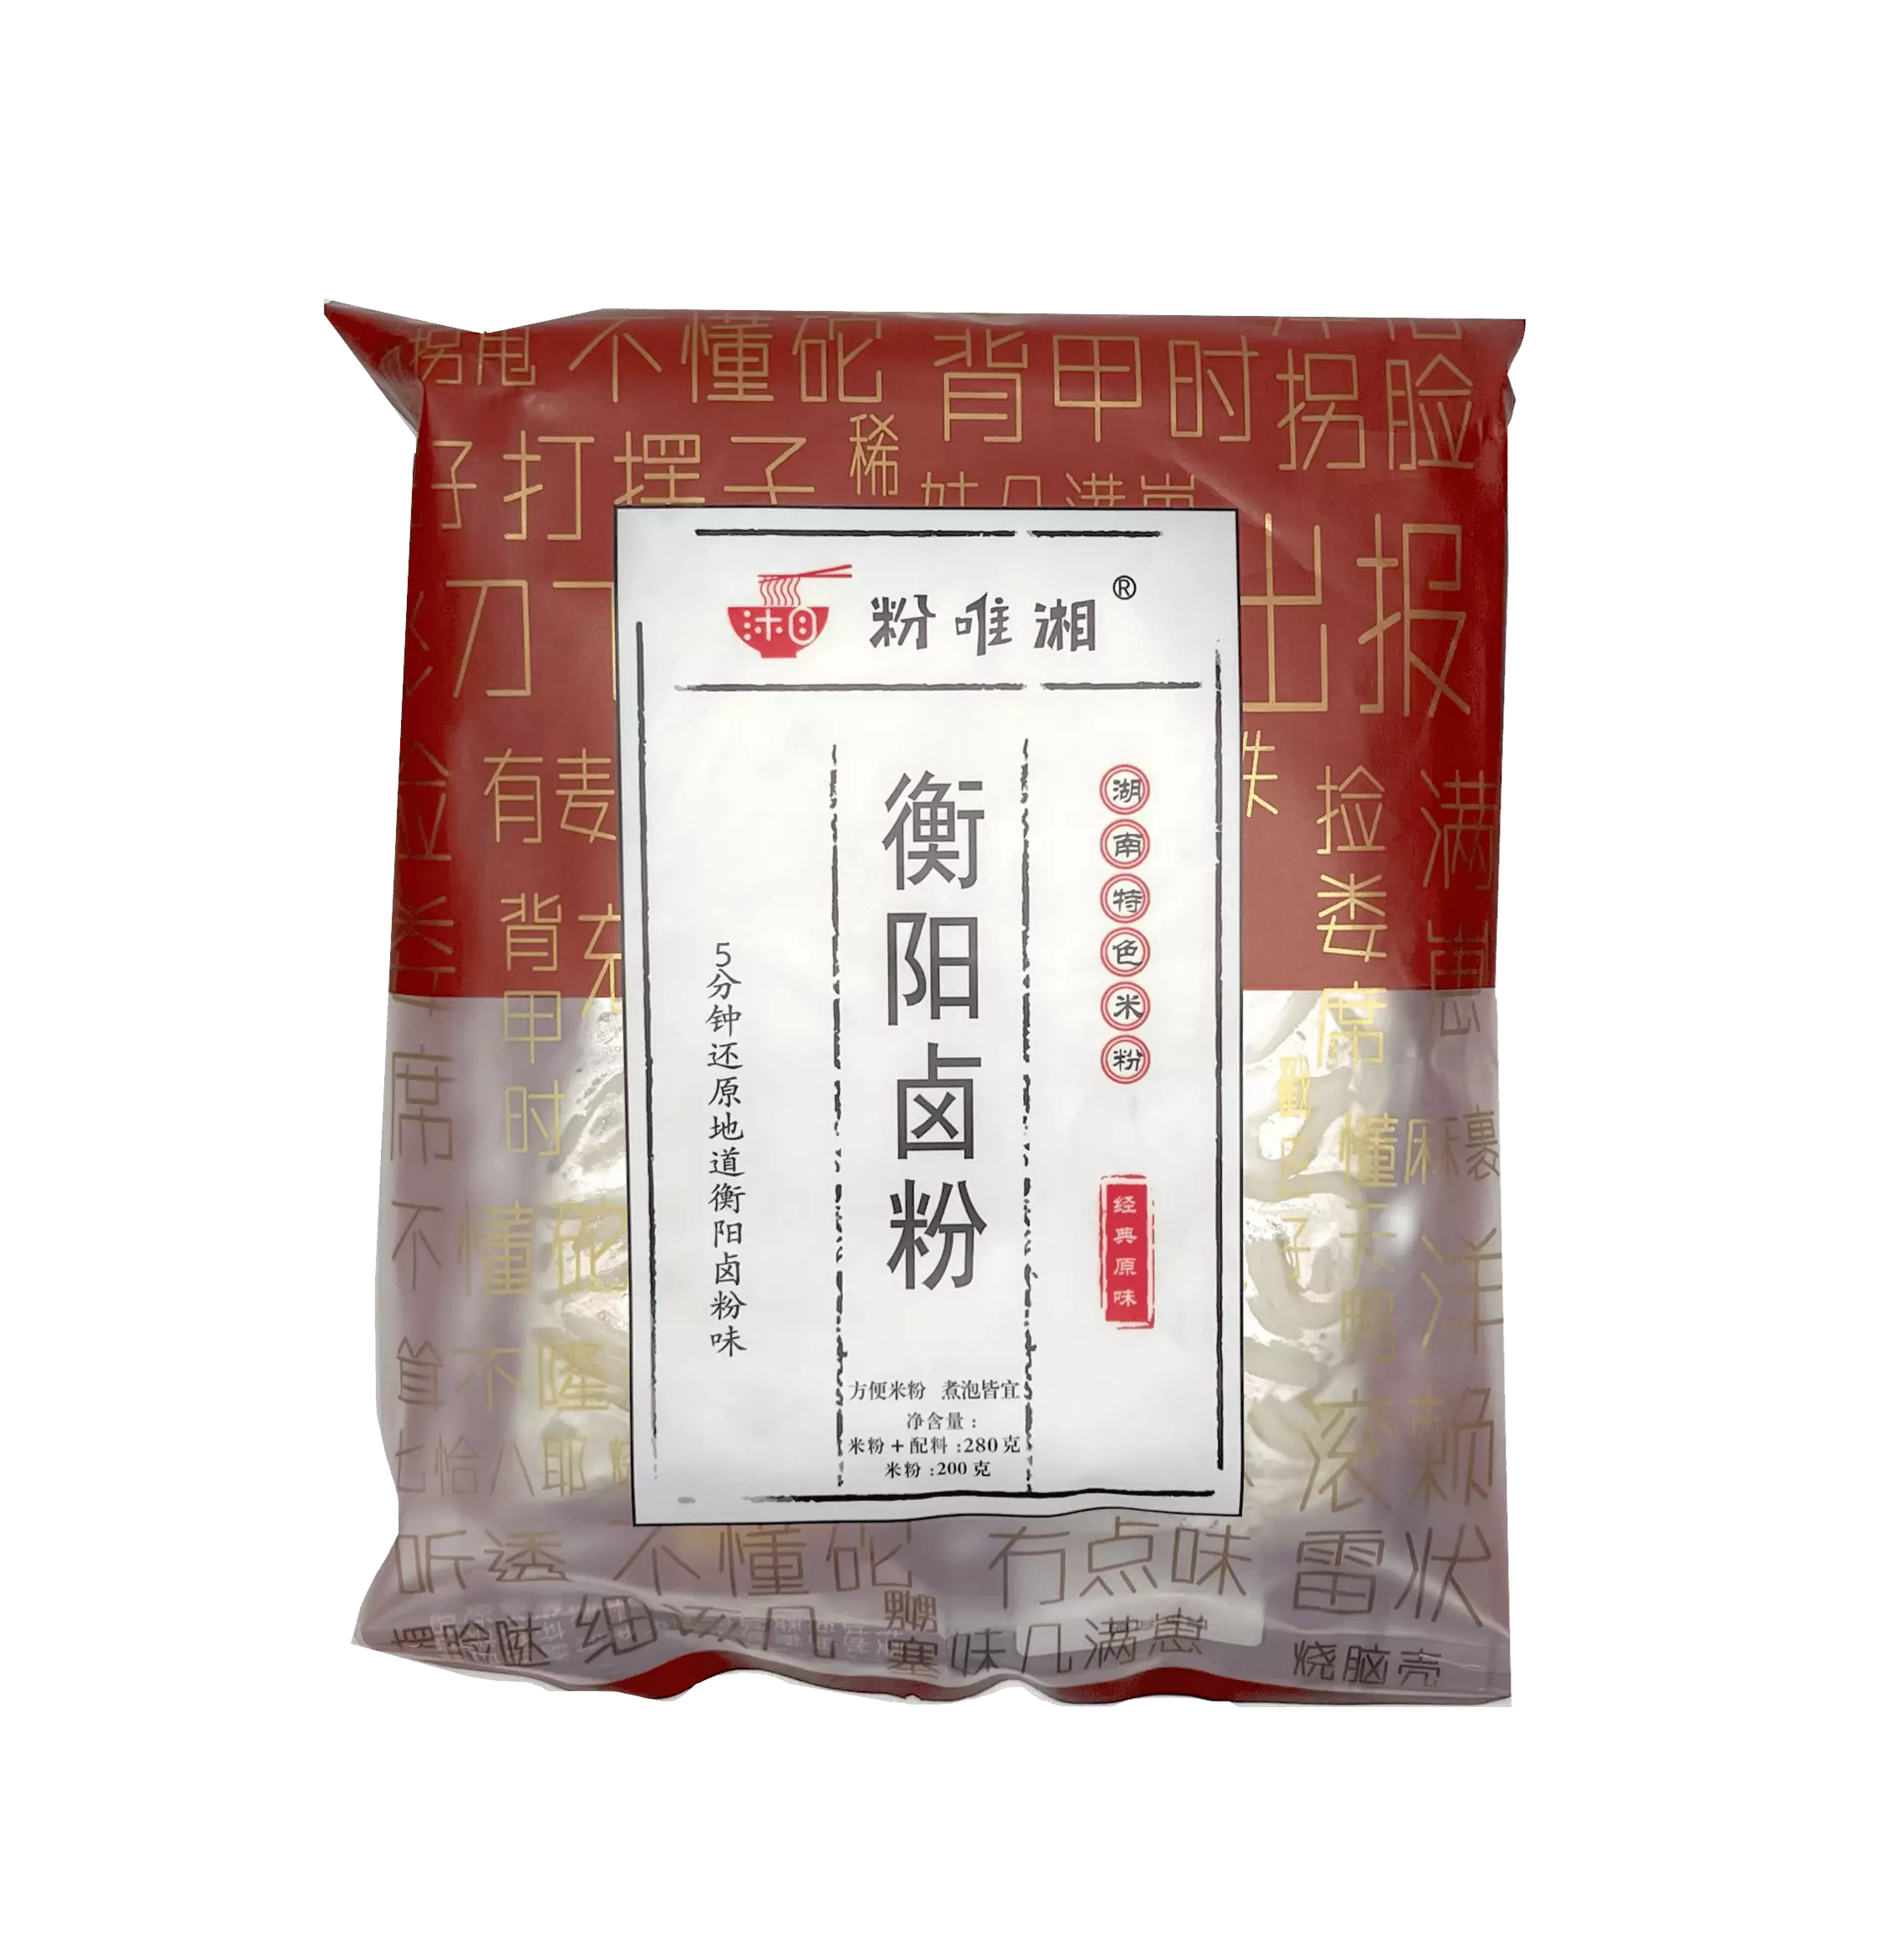 Snabbnudlar Original Smak 280g Fen Wei Xiang Kina